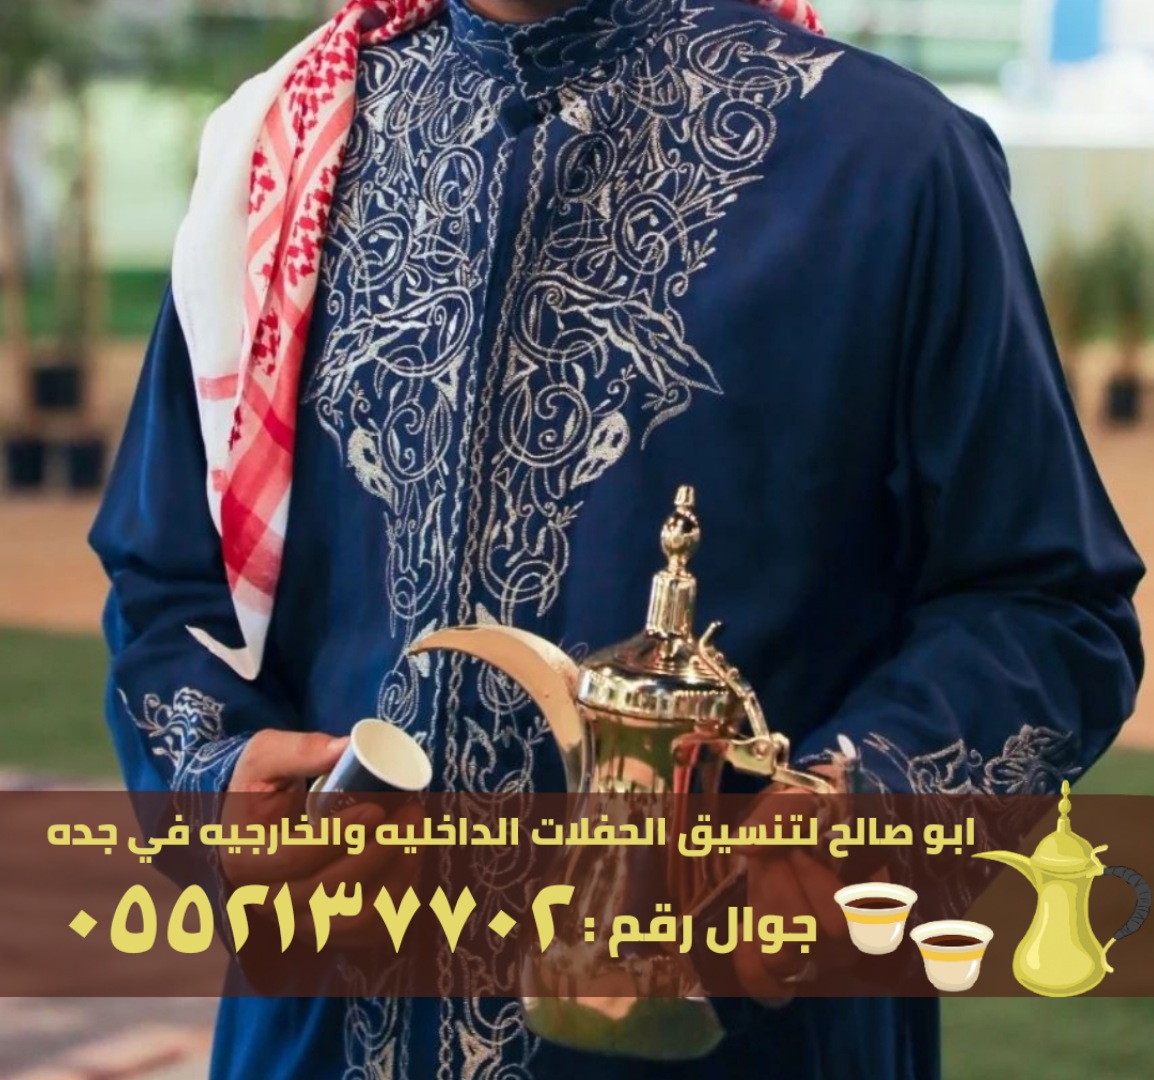 مباشرات و صبابين قهوة في جدة, 0552137702 P_260004kdm4